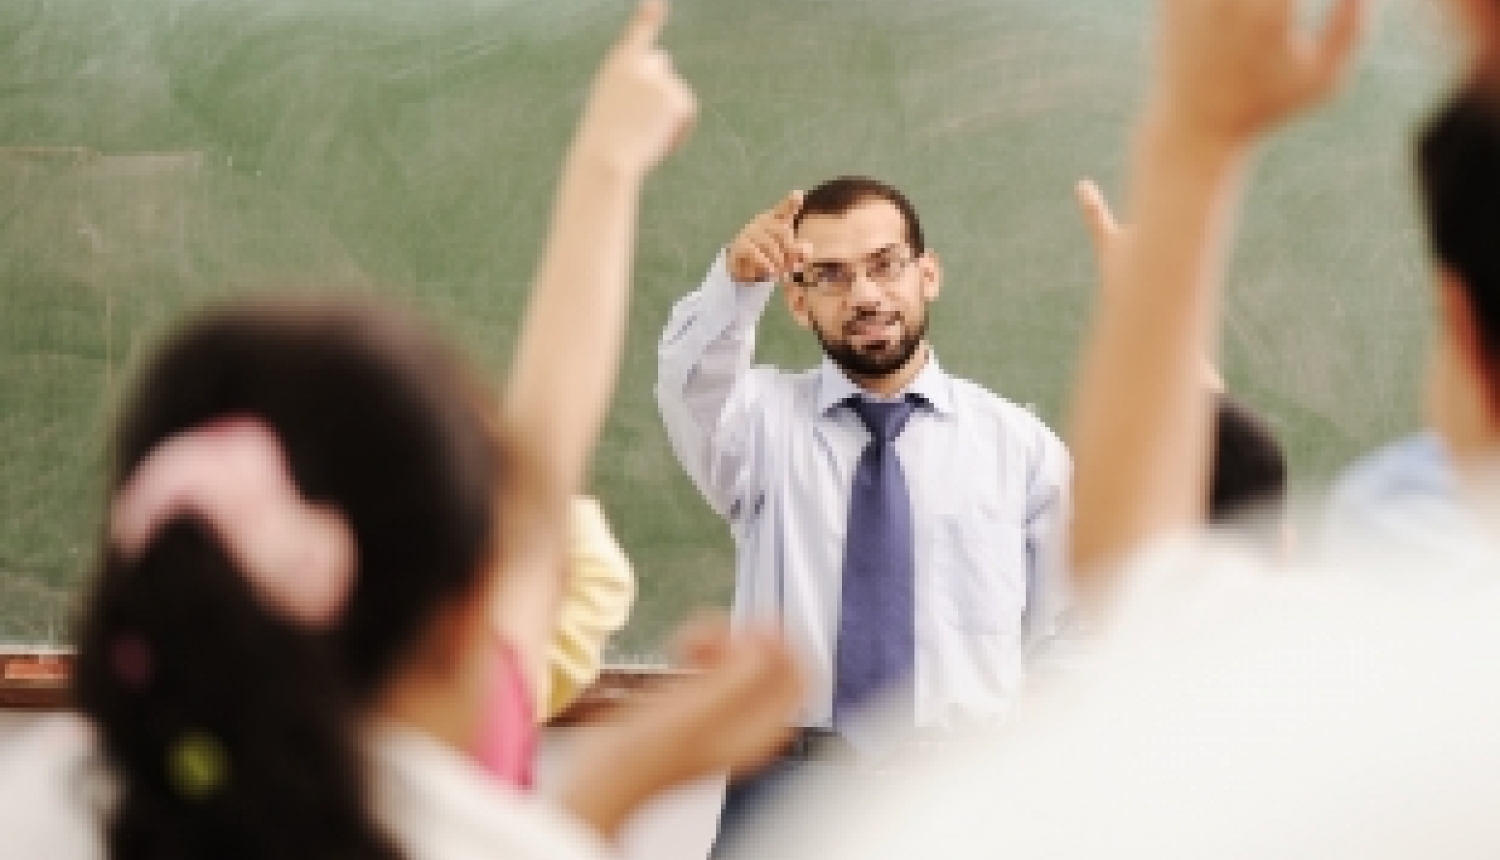 Eurydice ziņojums analizē skolotāja profesijas pieprasījumu un attīstības tendences Eiropā